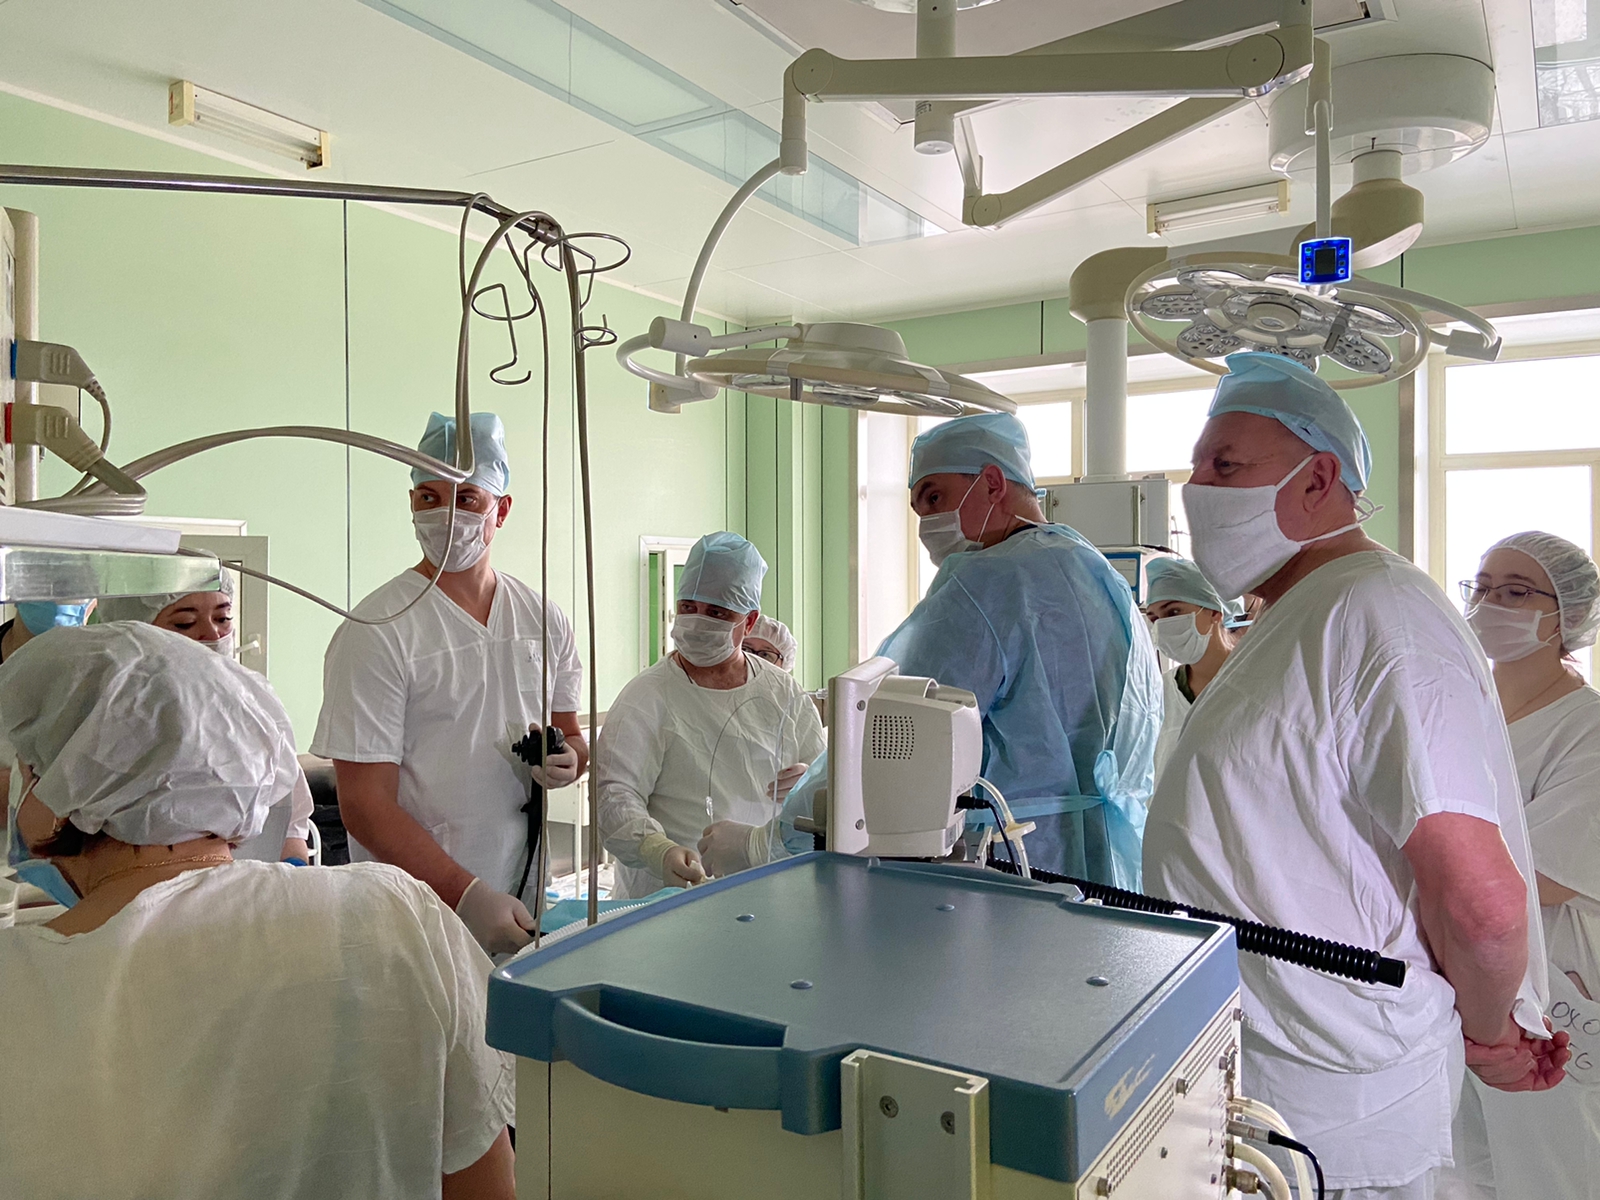 Ярославские детские хирурги провели первую операцию по установке гастростомы в желудок